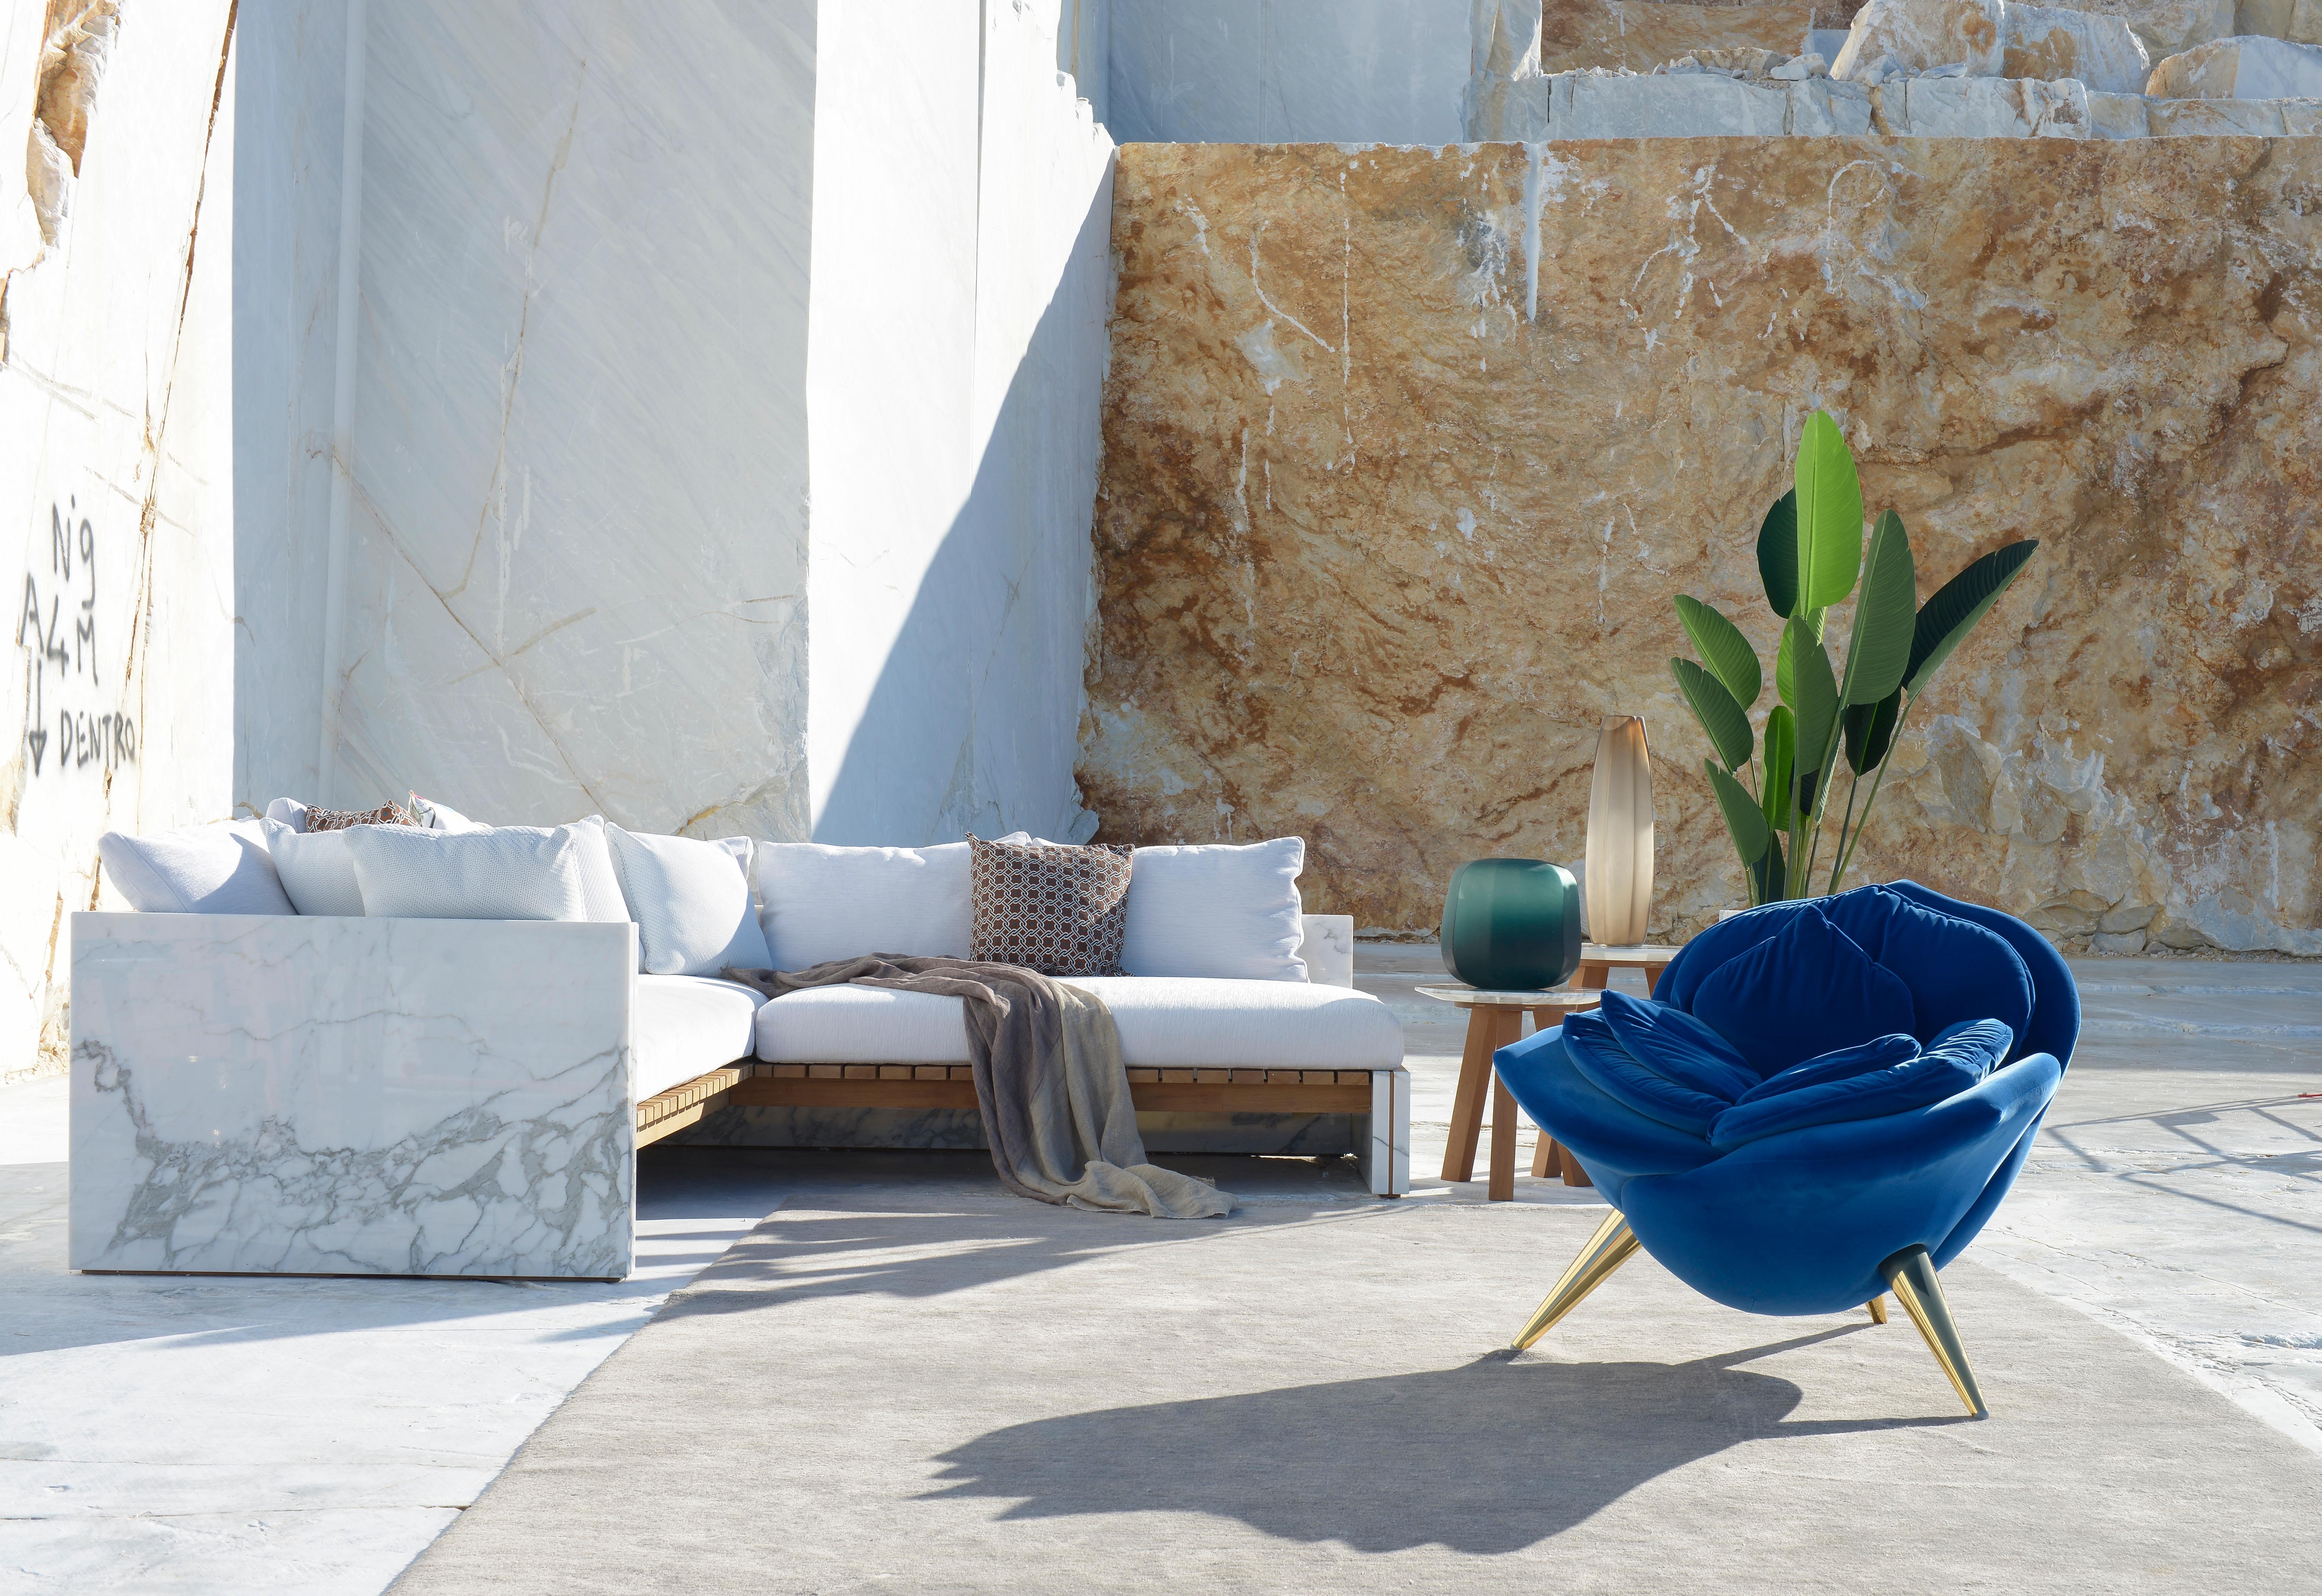 Das Sofa Bettogli ist aus Statuario-Marmor gefertigt, einer seltenen Marmorqualität, die in den Bettogli-Steinbrüchen in der nördlichen Toskana gewonnen wird, woher der Name stammt.

Aus dem Steinbruch, der das Symbol von Carrara ist, kommt eine